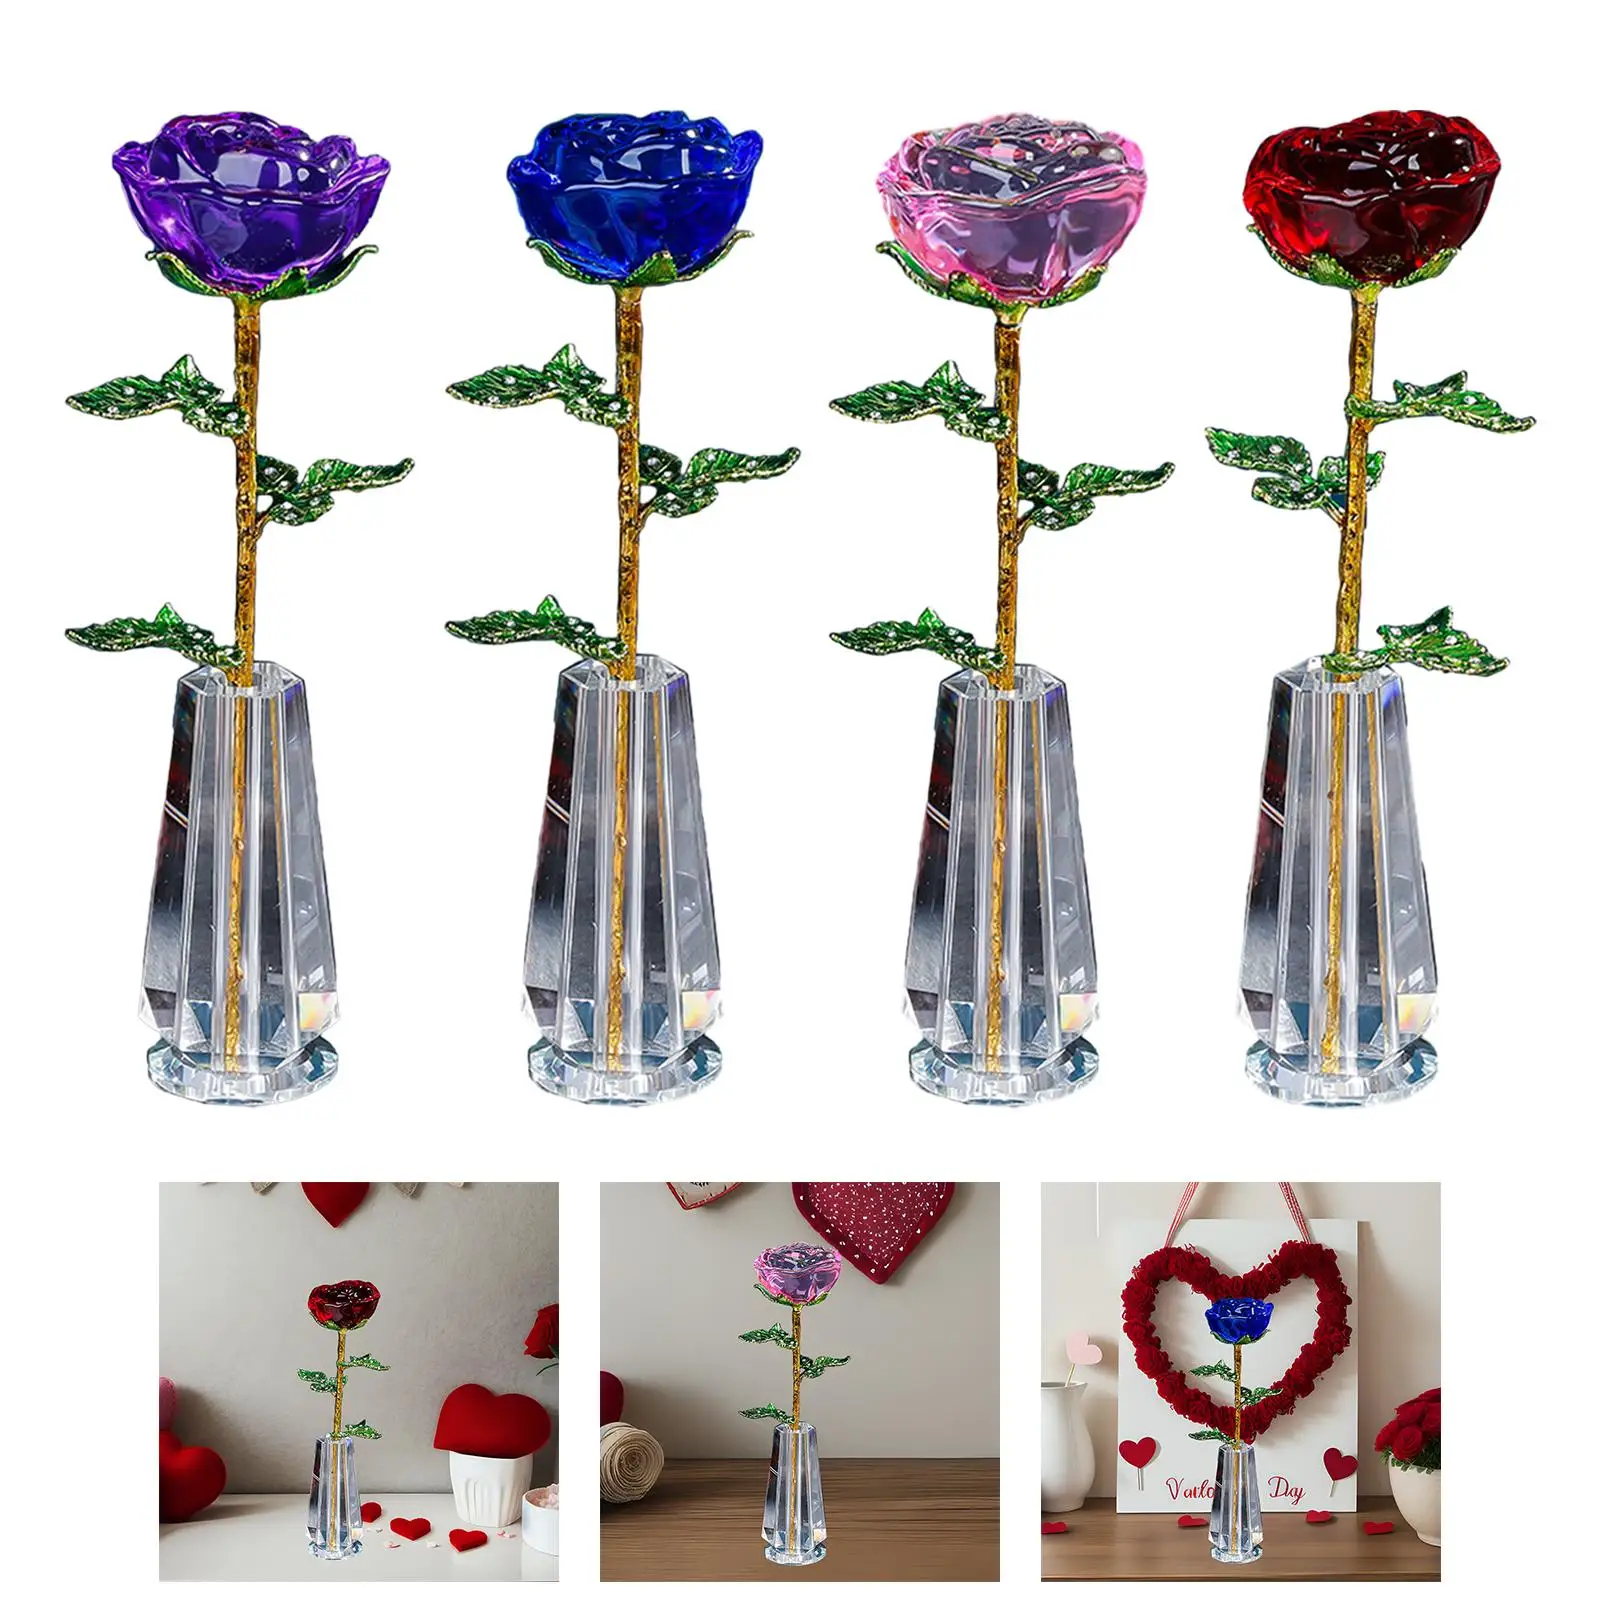 Valentine Crystal Flower with Jars Centerpiece Valentine Day Desktop Decoration Collectible for Mom Boyfriend Husband Him Her